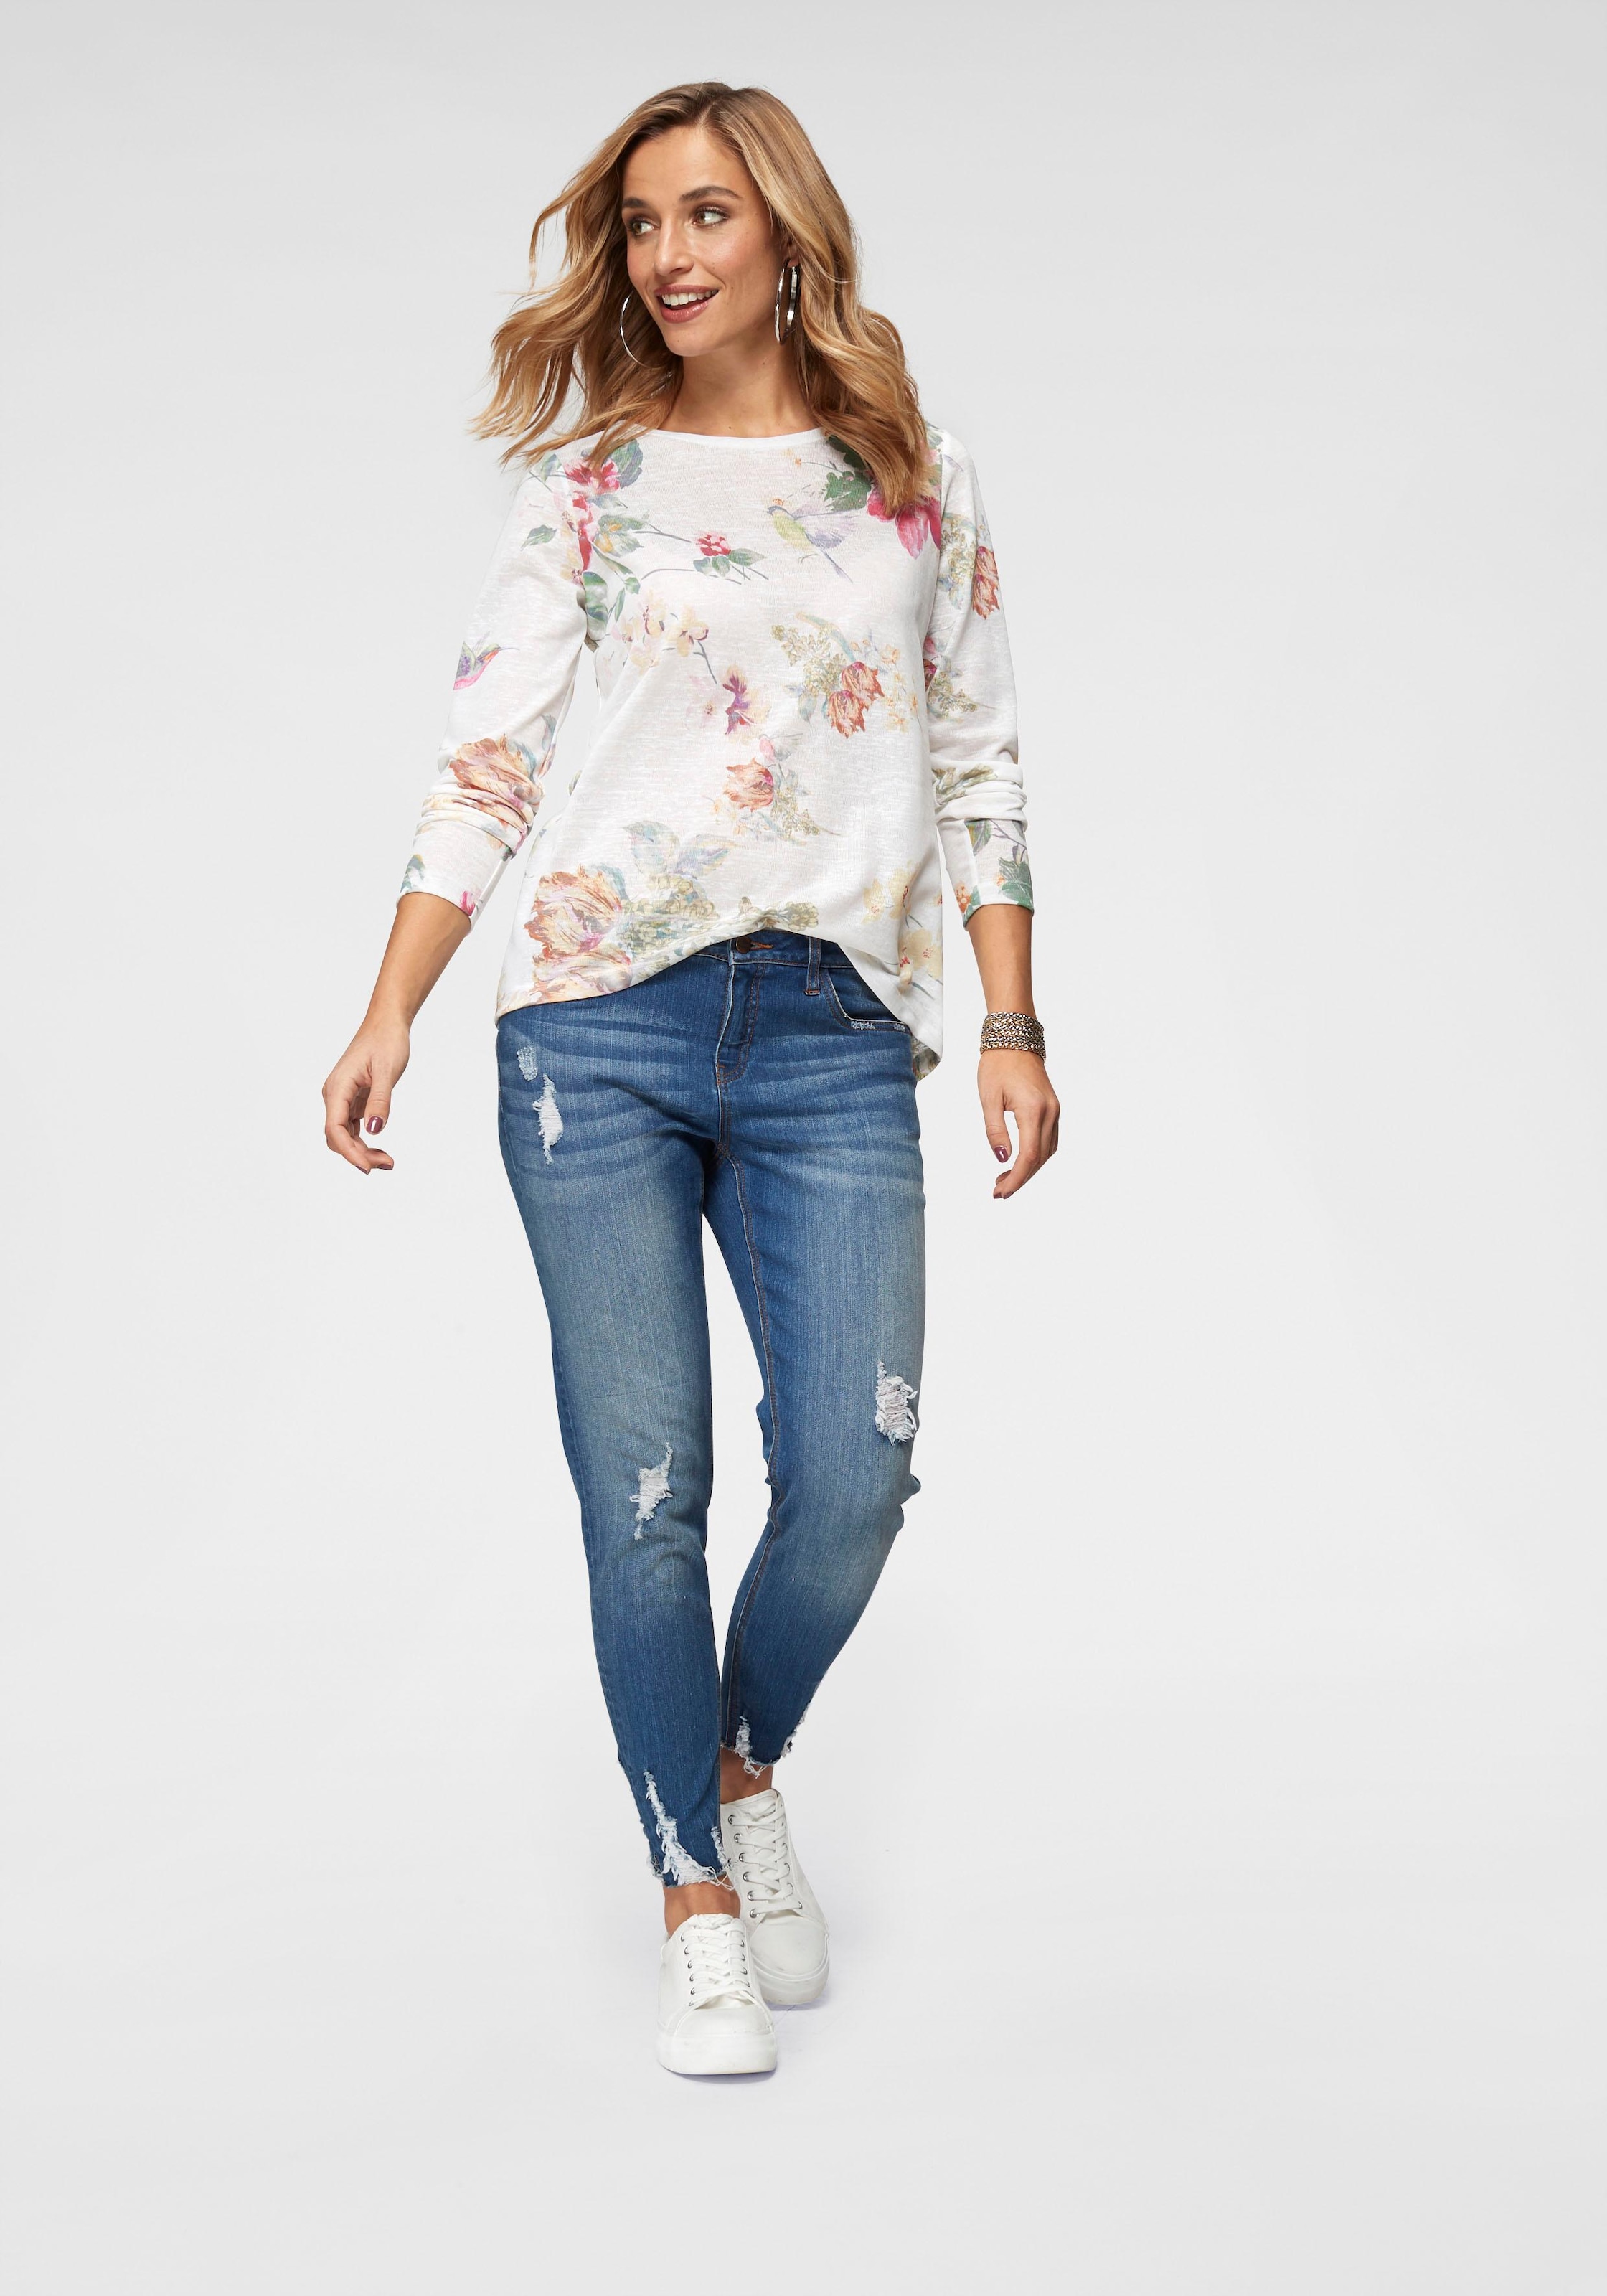 Langarmshirt, Vögeln online und mit Blumendruck CASUAL großflächigem kaufen Aniston